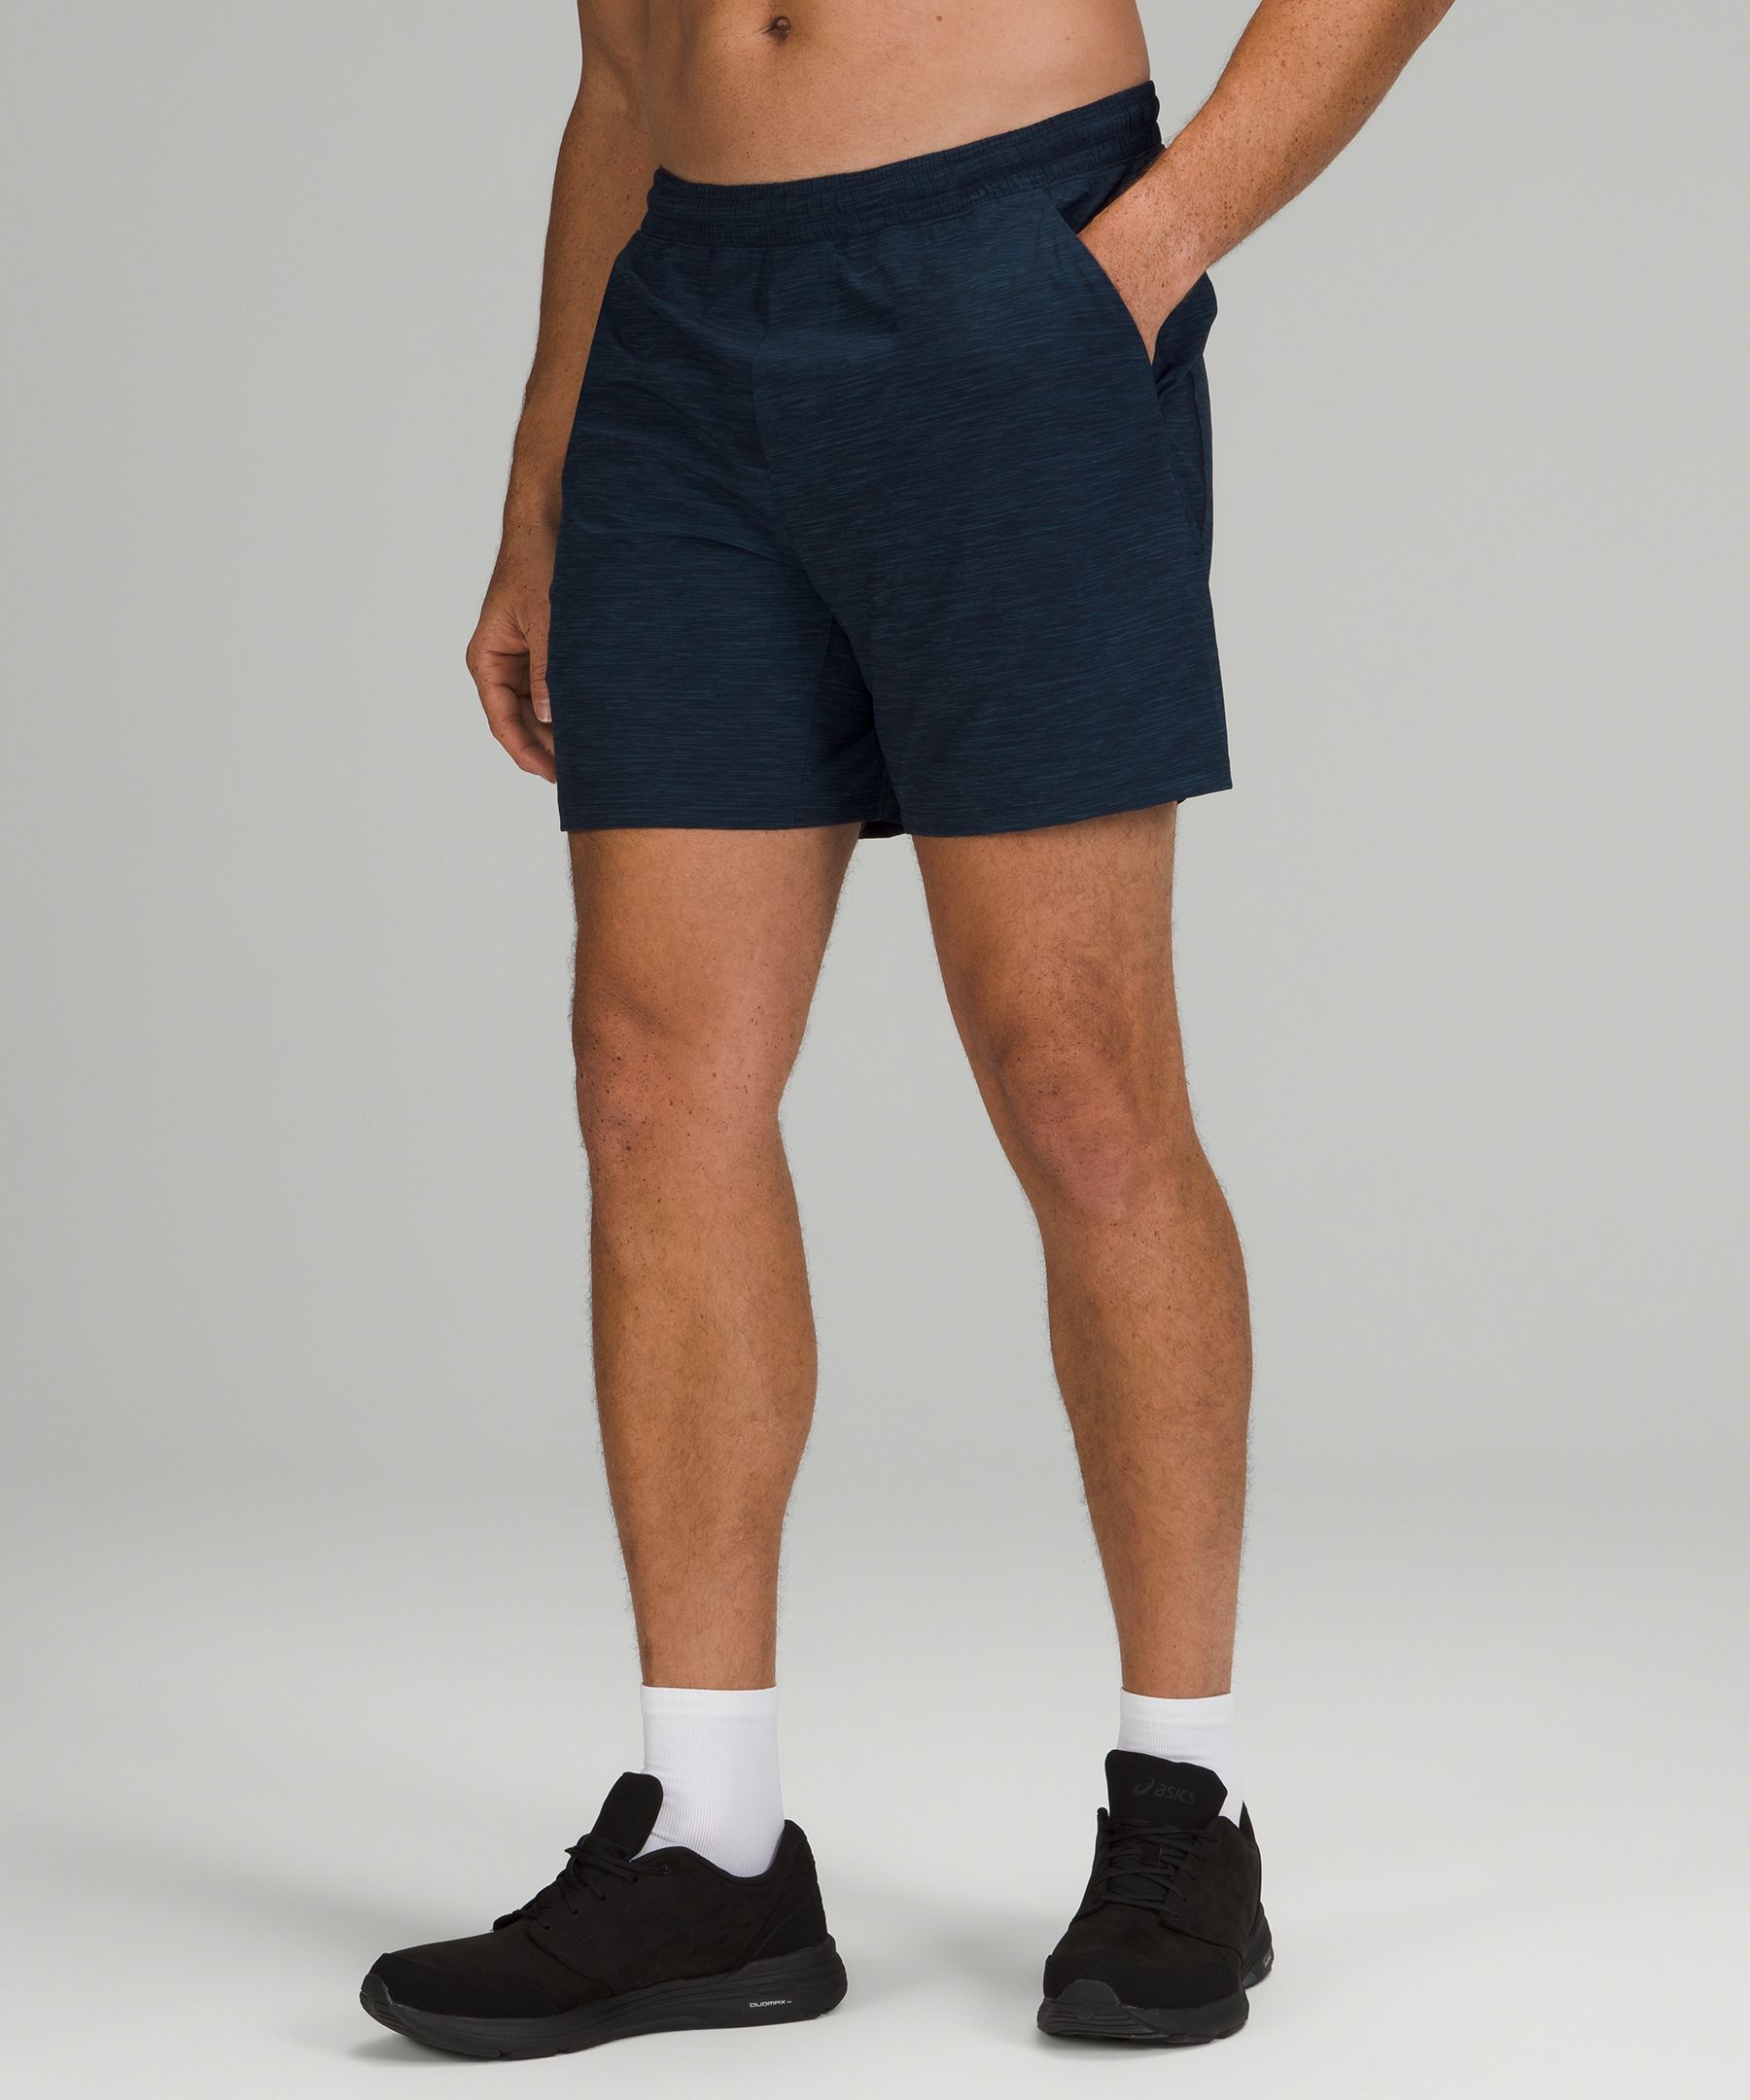 lululemon workout shorts